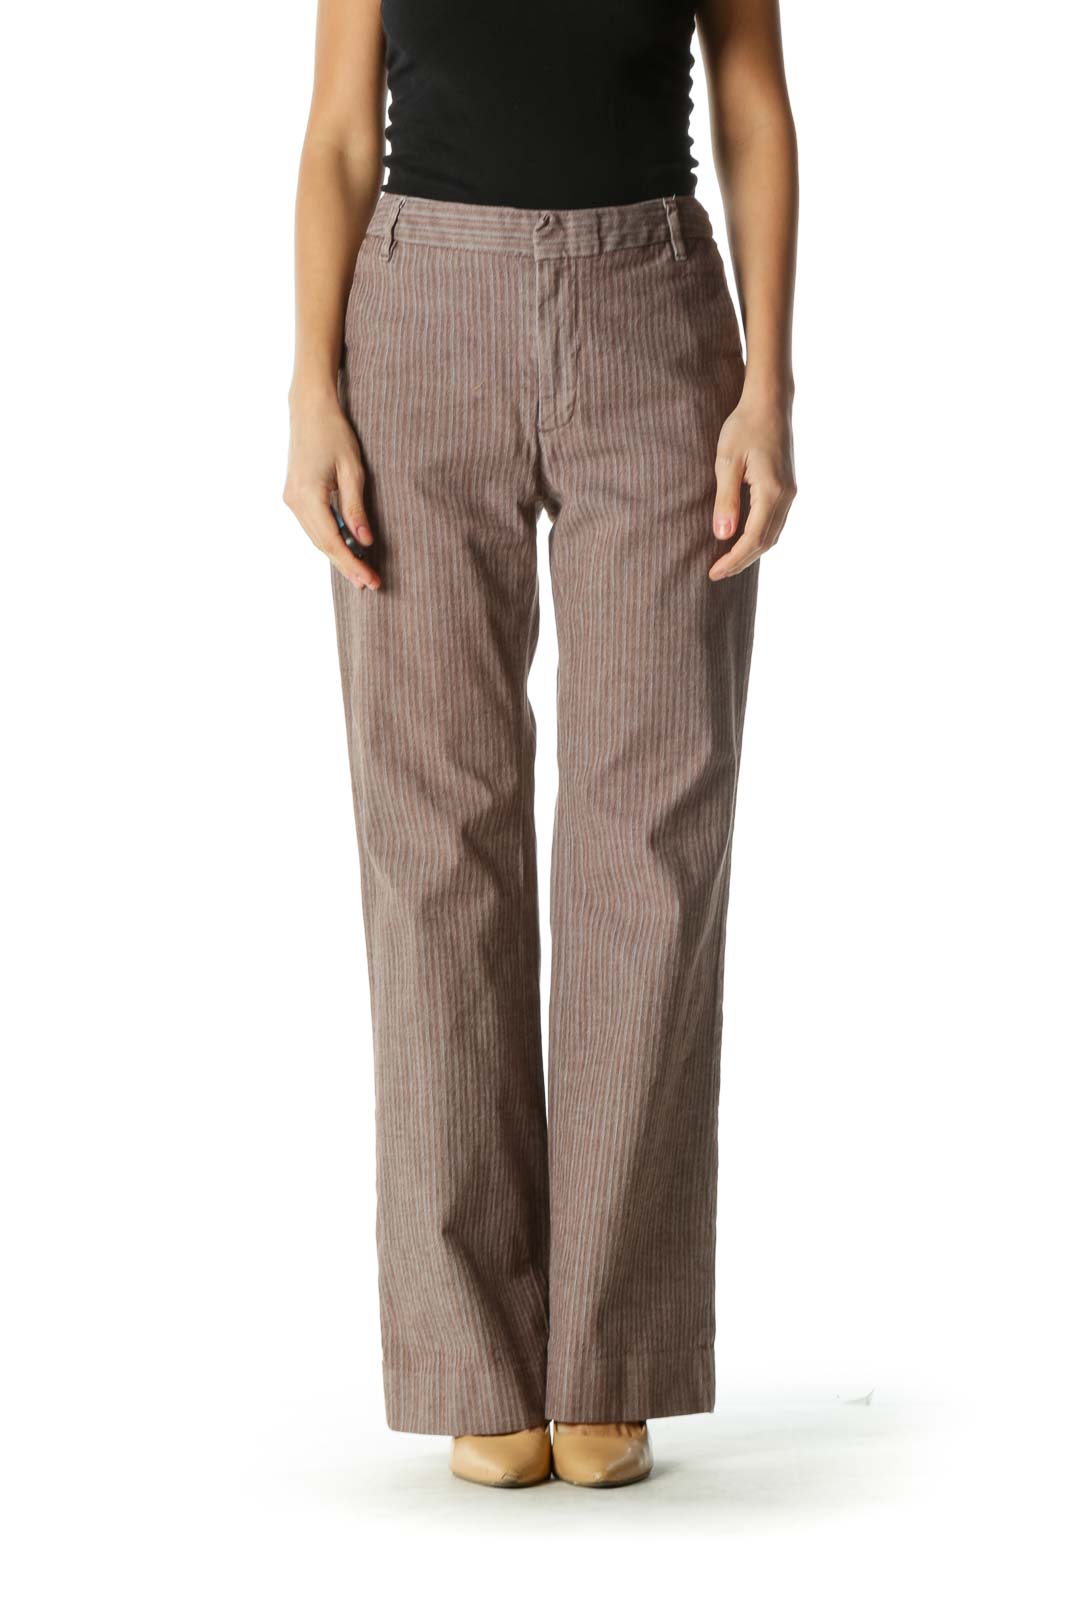 Gap - Brown Striped Wide-Leg Pants Cotton Spandex | SilkRoll